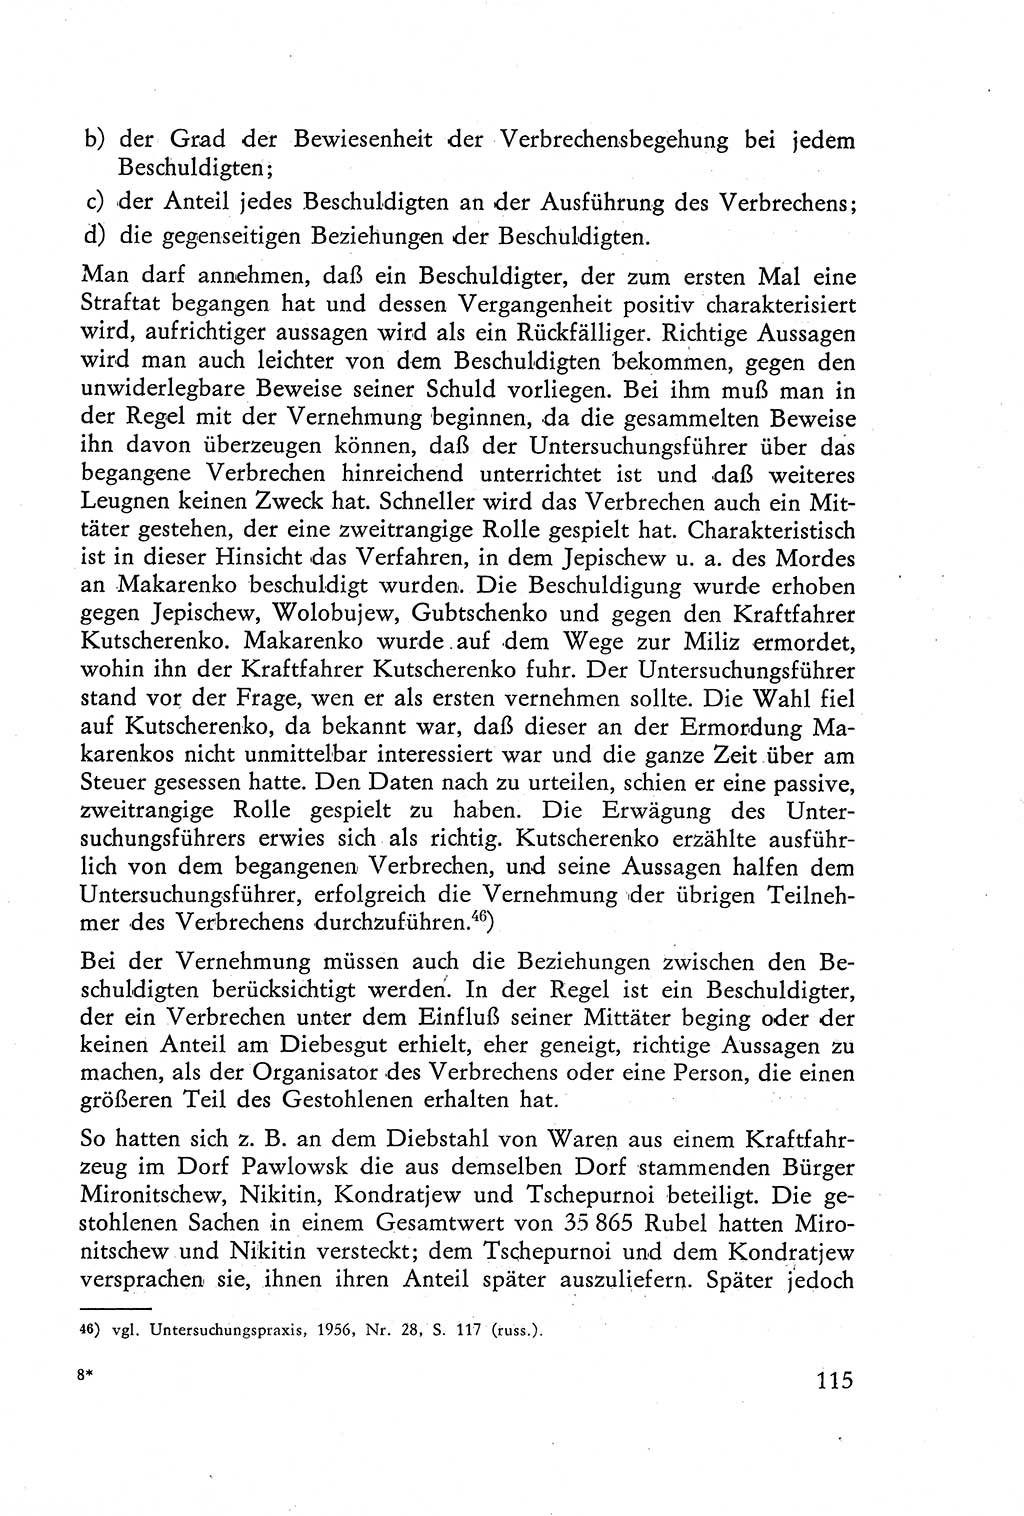 Die Vernehmung [Deutsche Demokratische Republik (DDR)] 1960, Seite 115 (Vern. DDR 1960, S. 115)